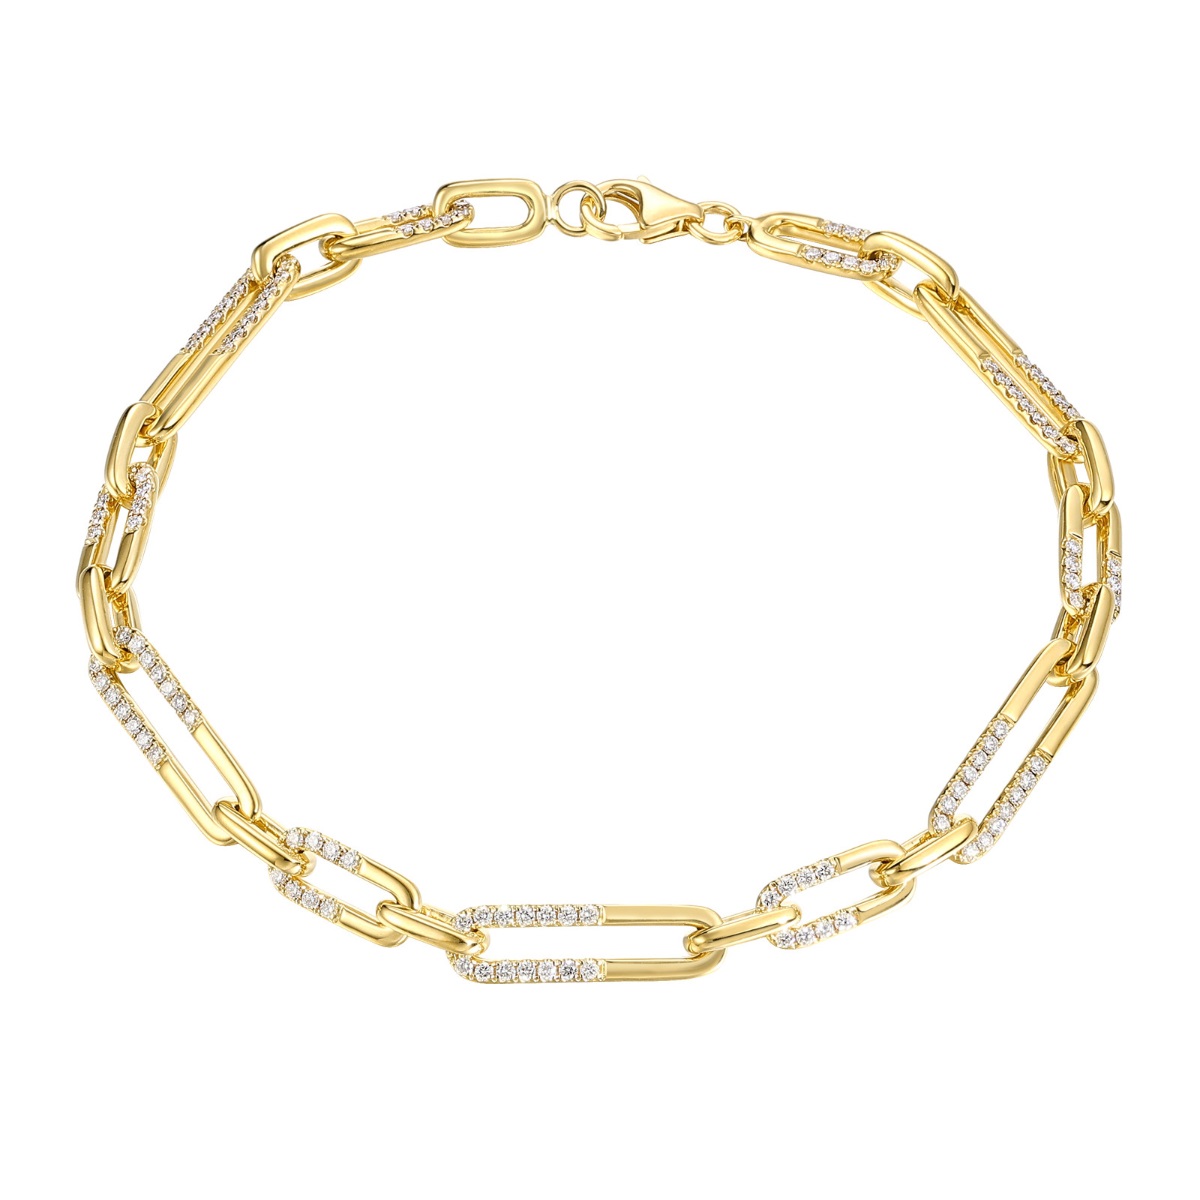 BL36810WHT – 18K Yellow Gold  Diamond Bracelet, 0.99 TCW